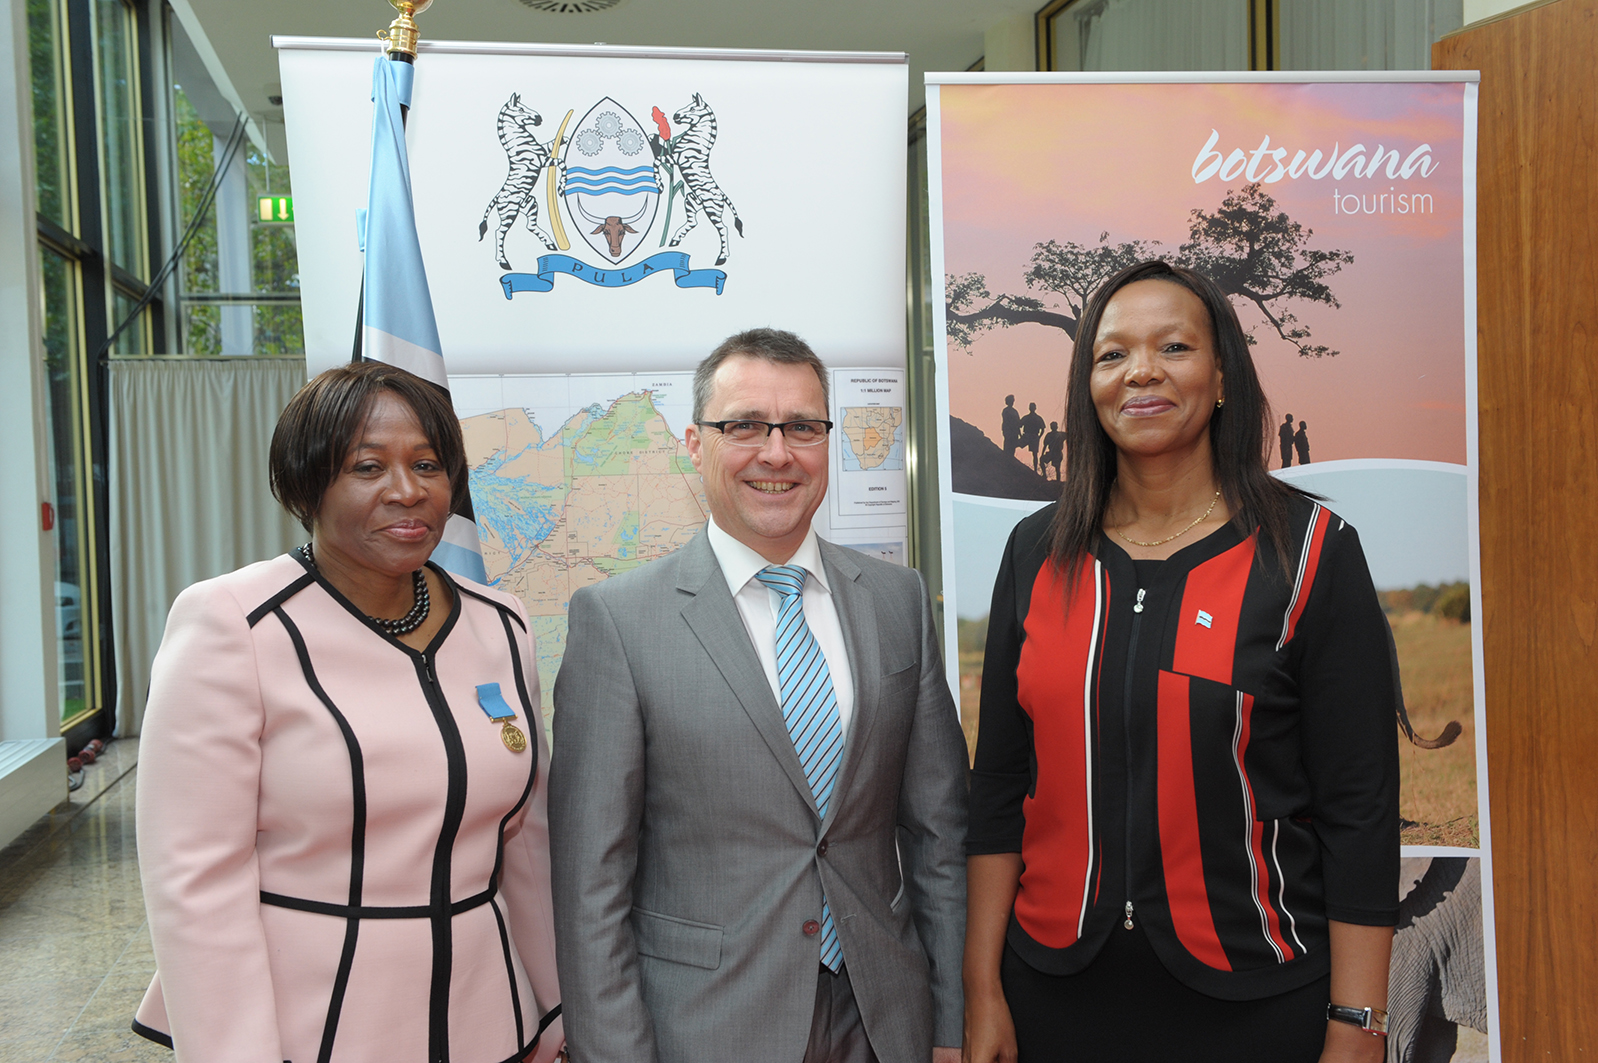 Embassy of Botswana – Botswana 49th Anniversary Celebration